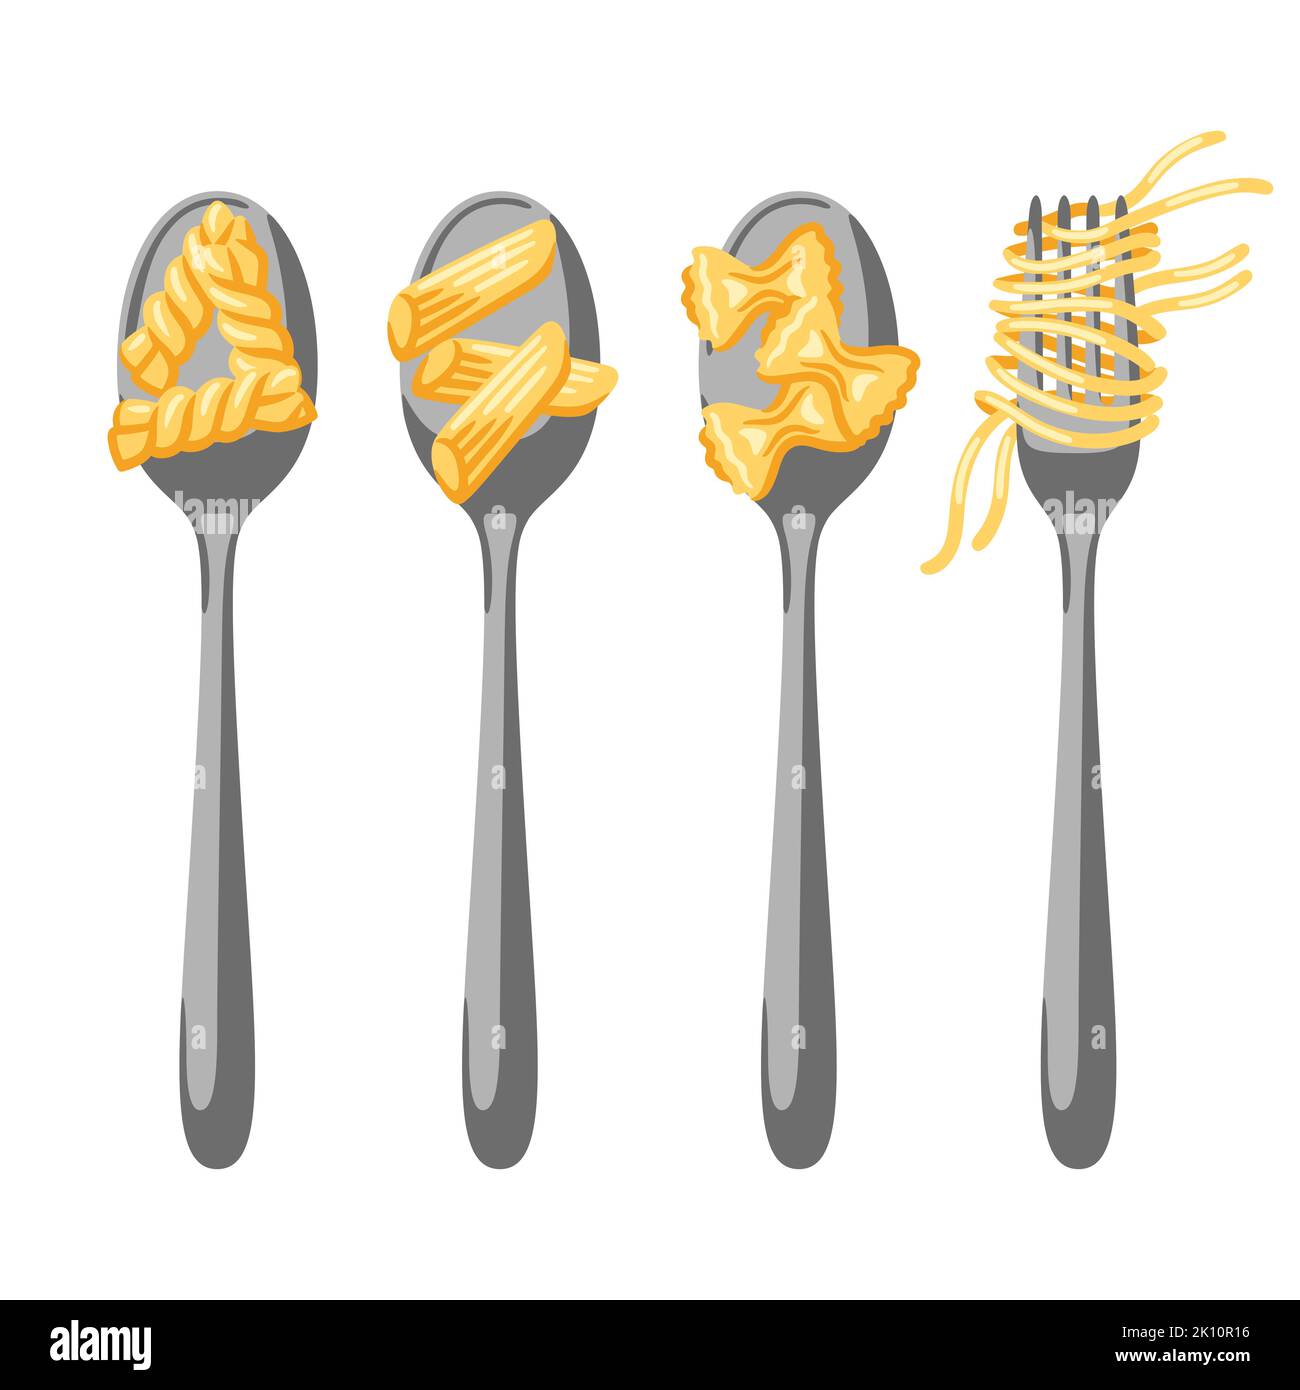 Illustrazione della pasta italiana su cucchiaio e forchetta. Immagine culinaria per menu di ristoranti. Illustrazione Vettoriale